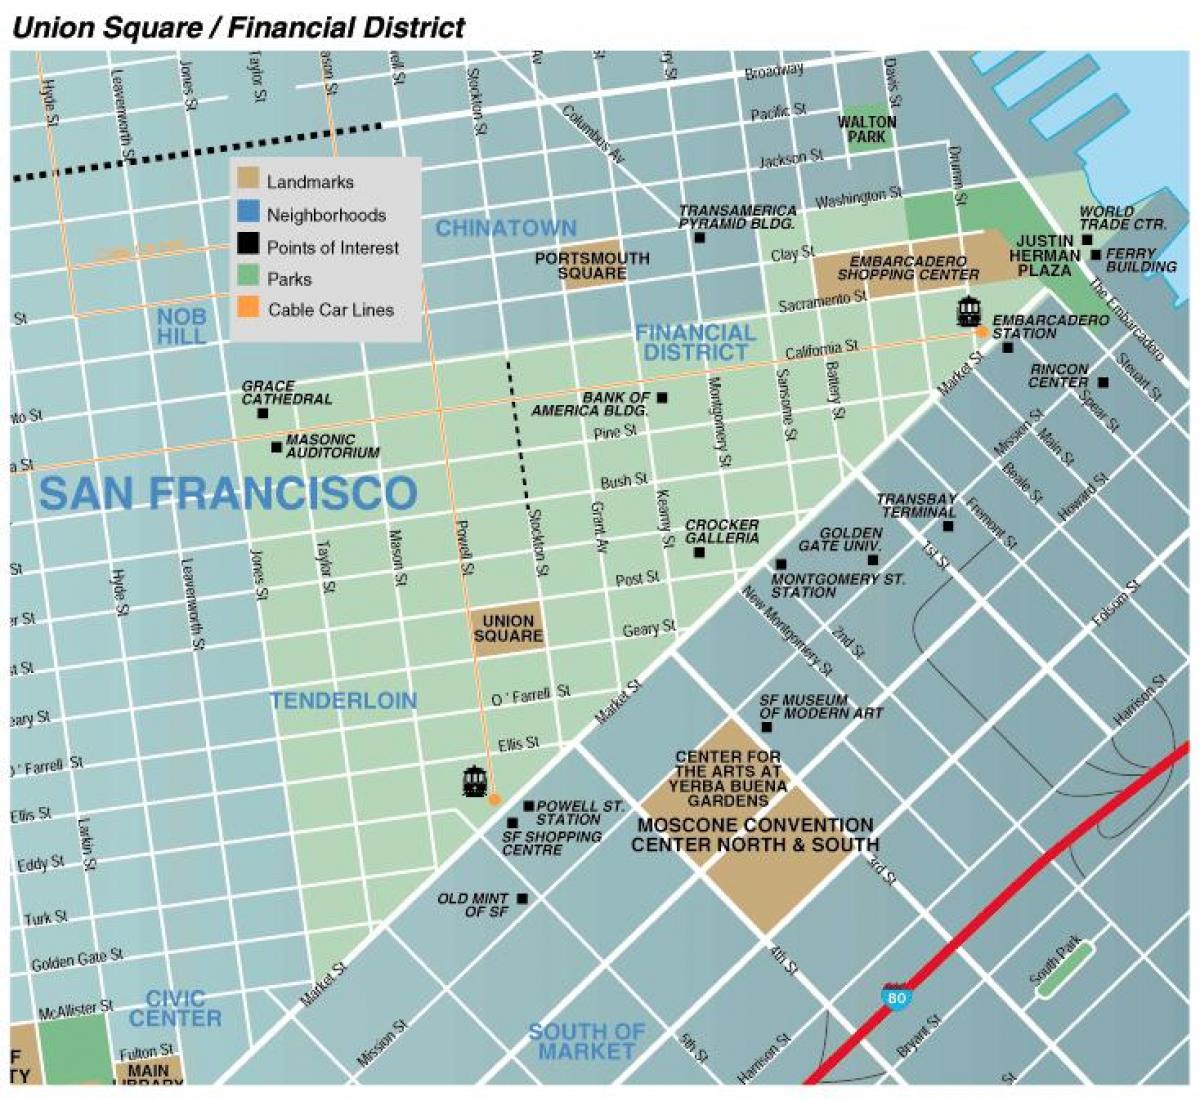 Mappa della zona union square di San Francisco